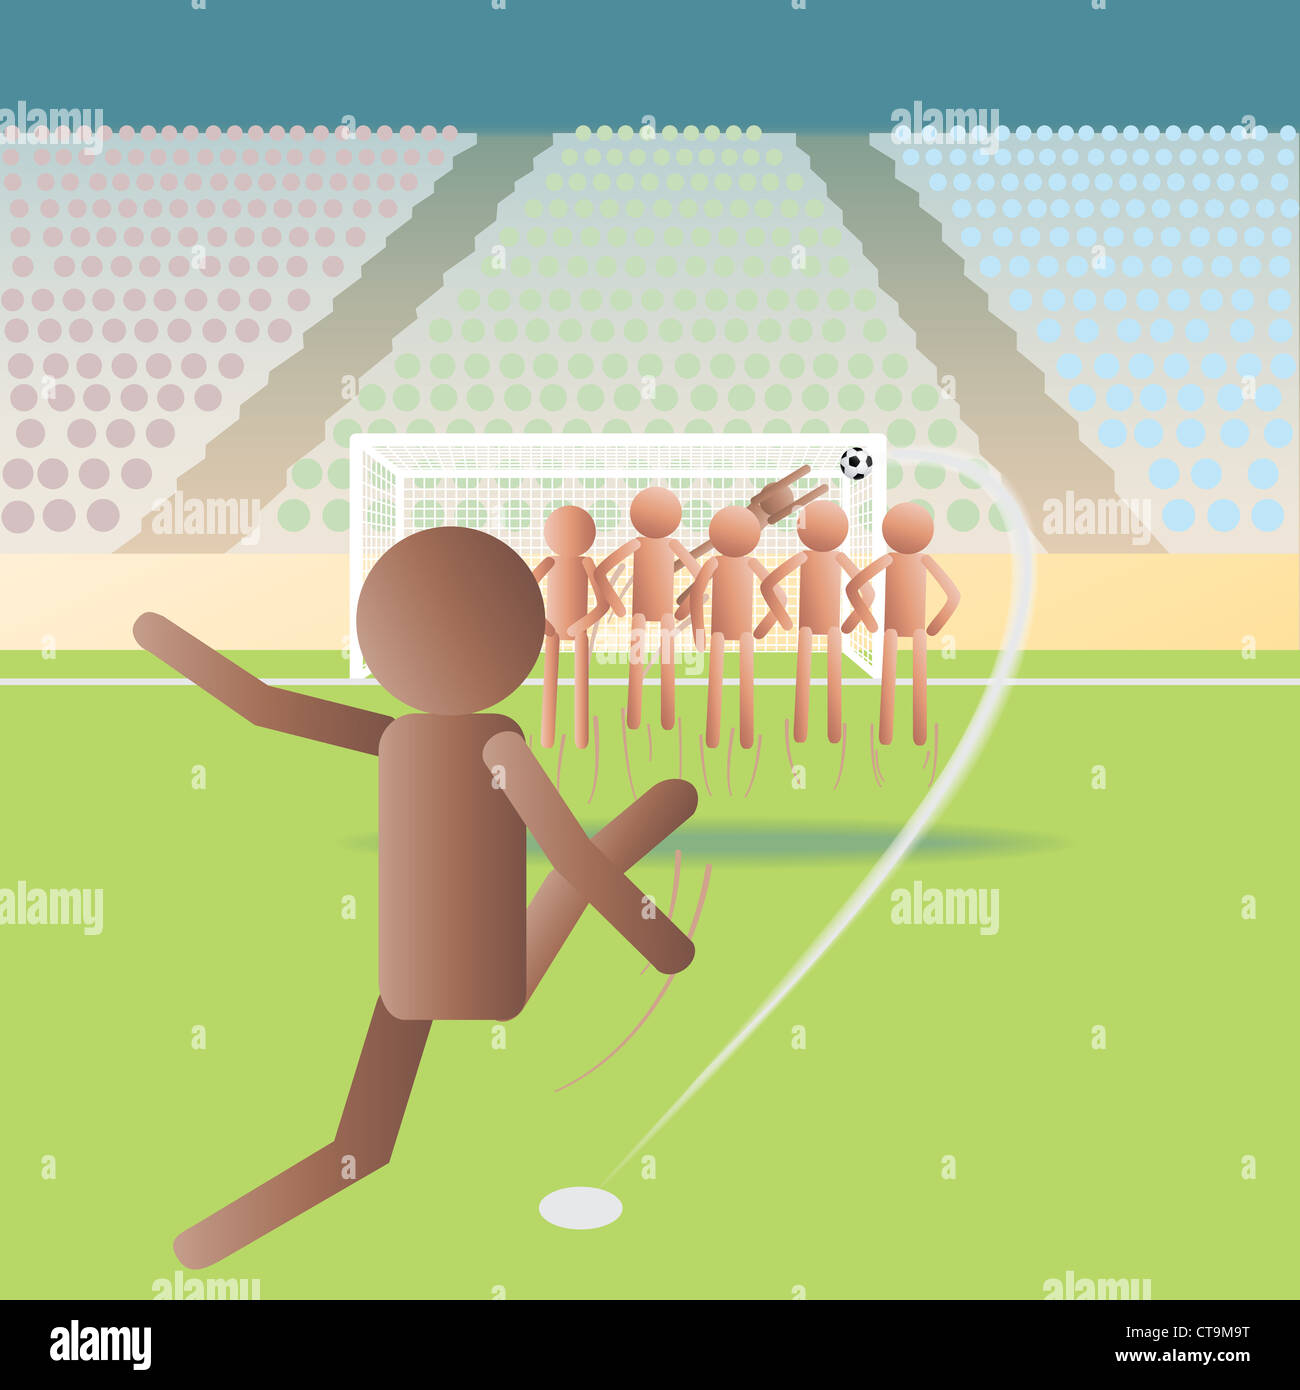 Abbildung von einem Fußball-match, Fußballspiel auf eine Freistoß-Situation  Stockfotografie - Alamy